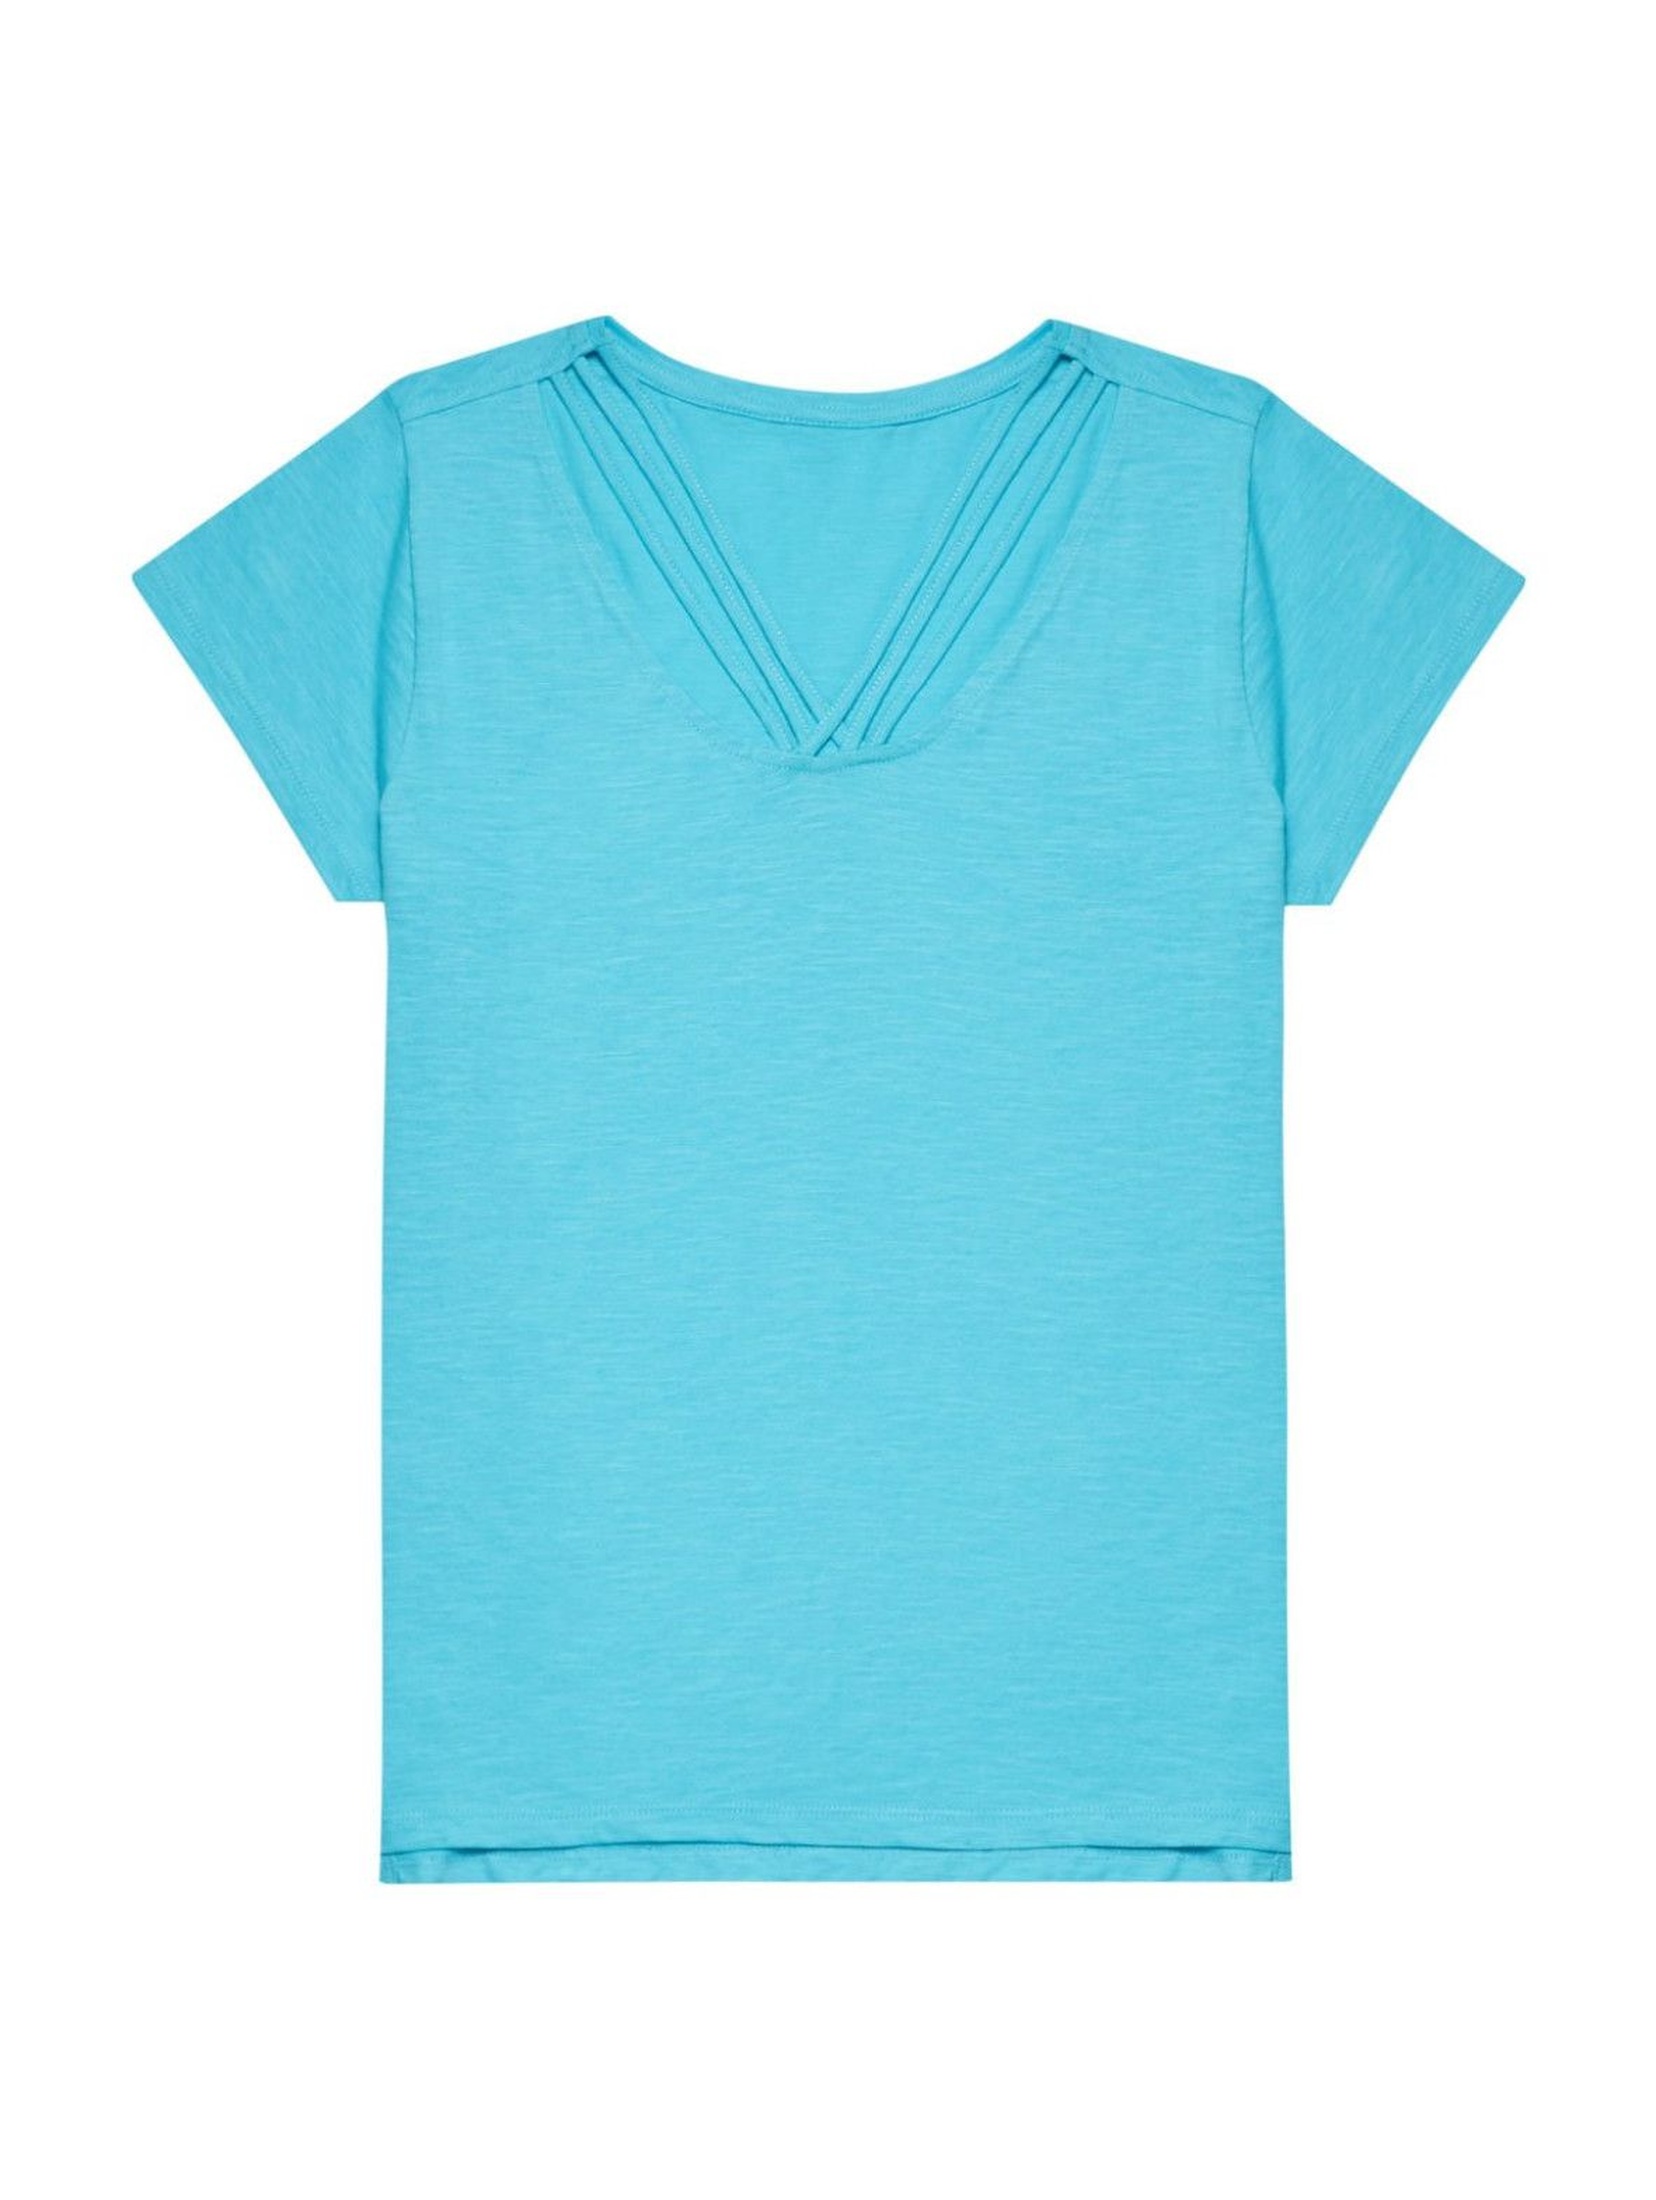 T-shirt damski bawełniany niebieski